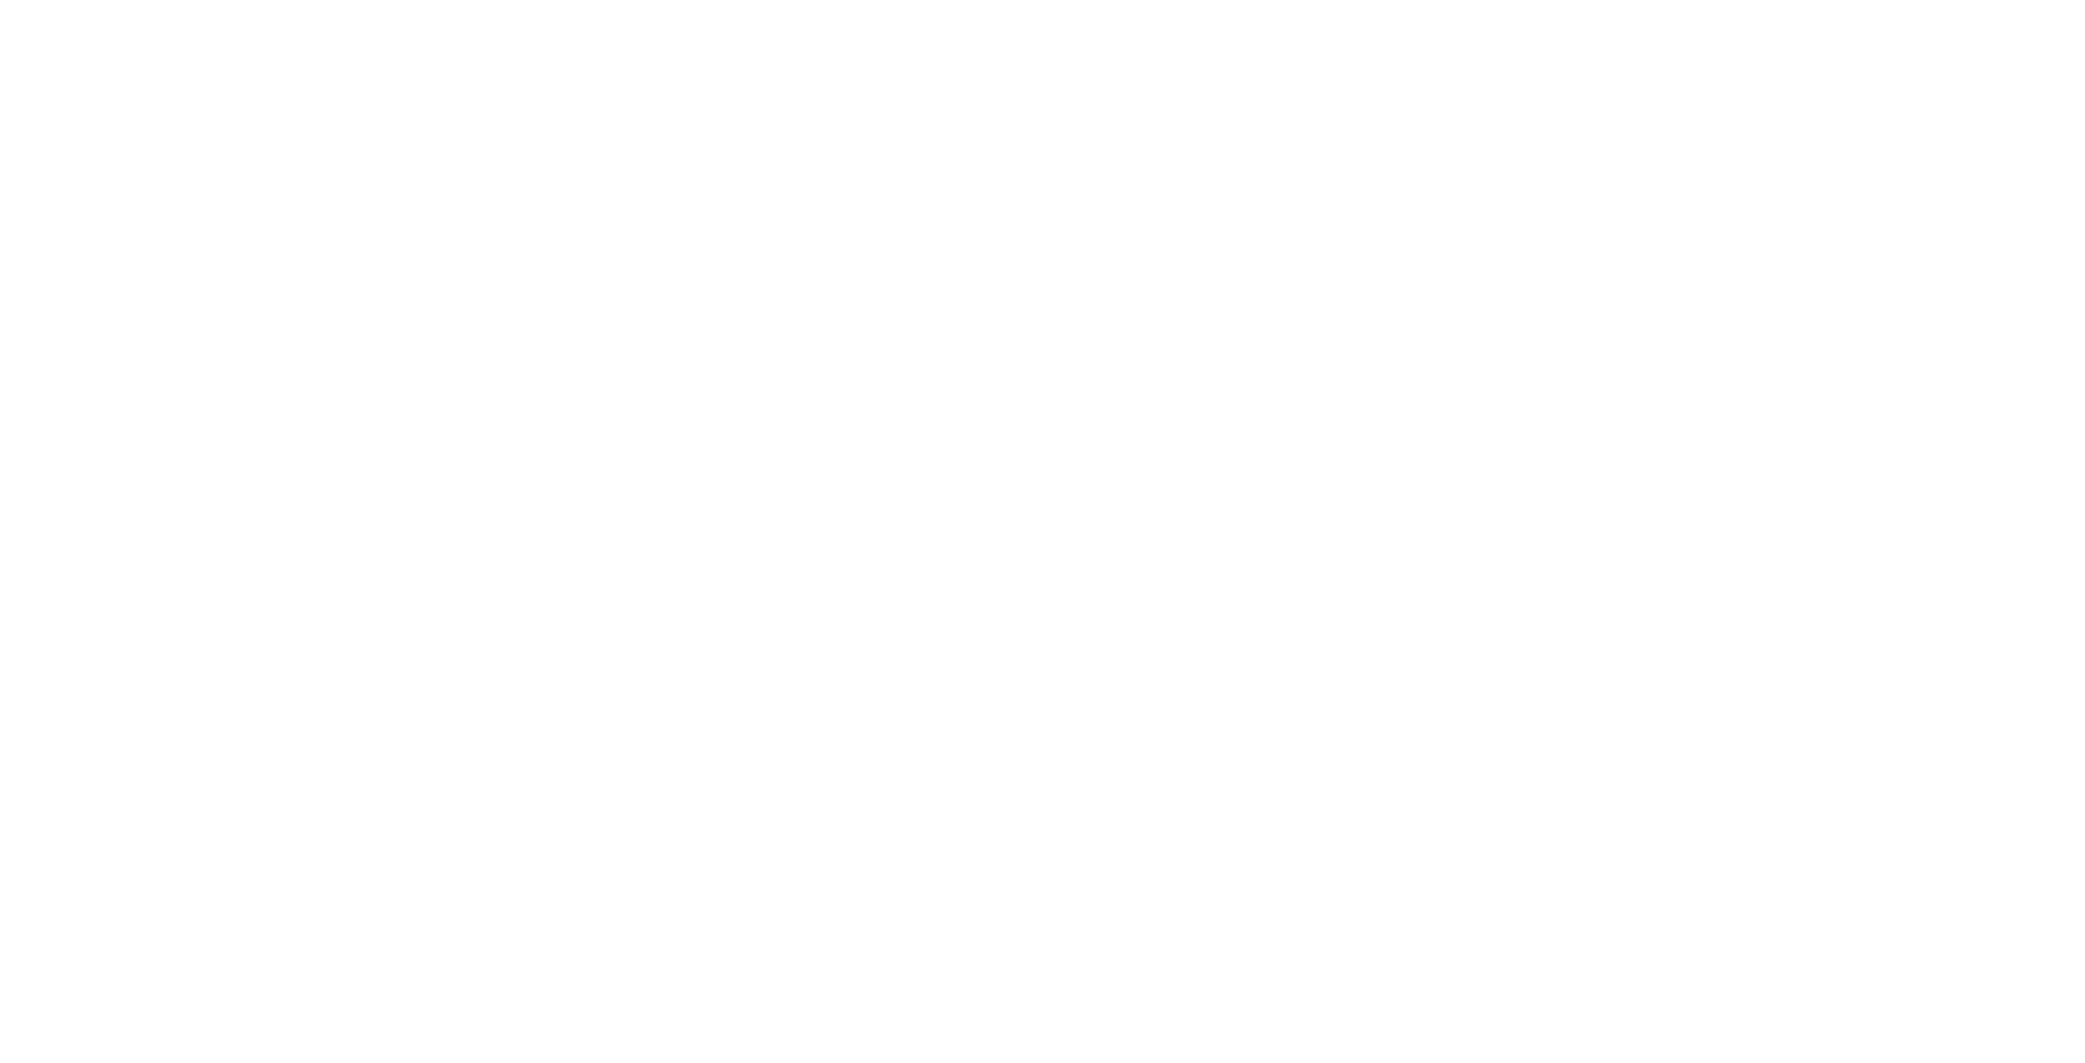  Network Aegis Full White Logo 